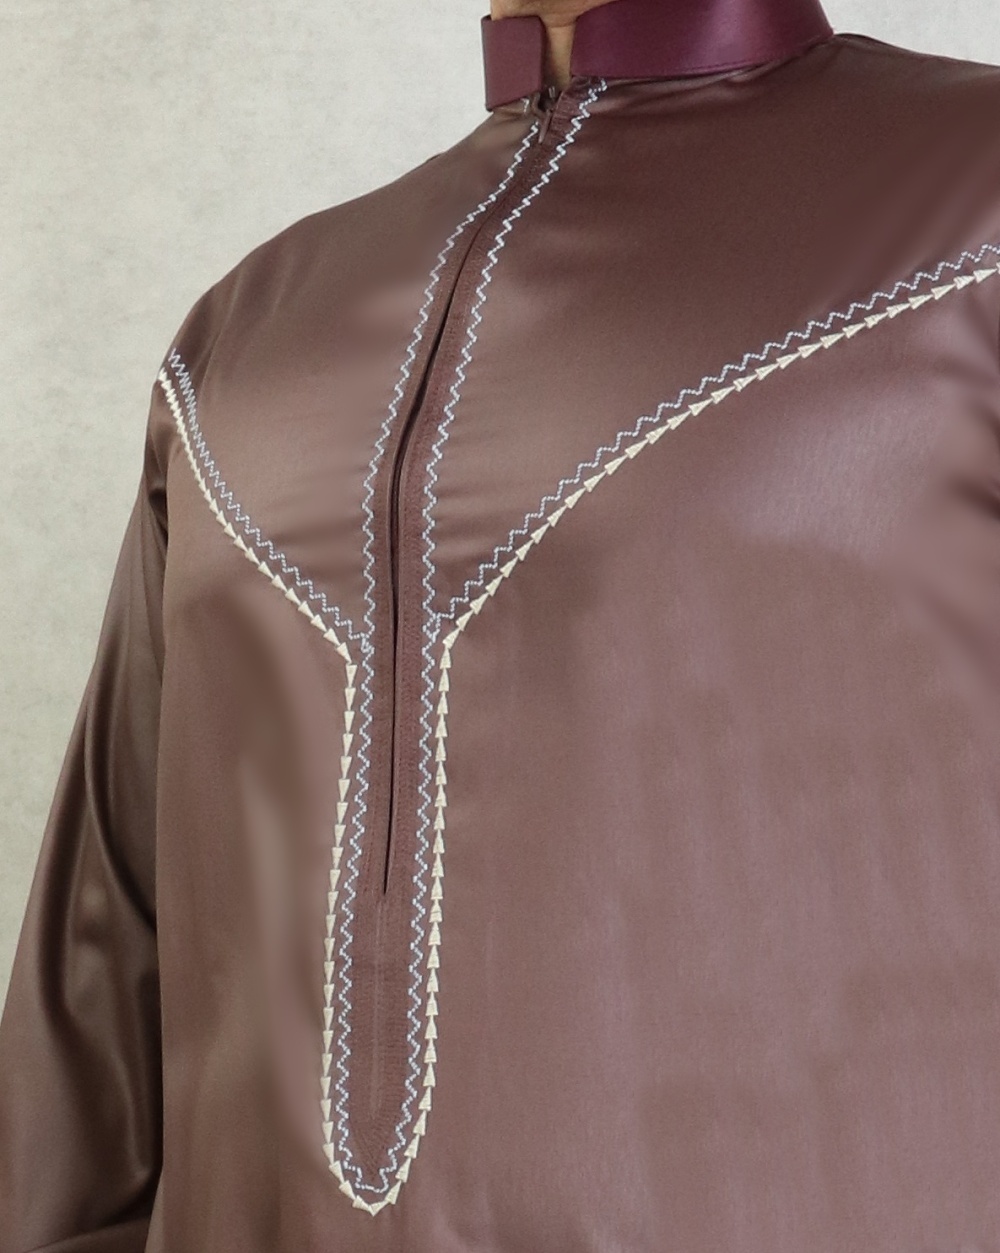 Qamis traditionnel élégant de qualité supérieure tissu satiné pour homme -  Couleur beige